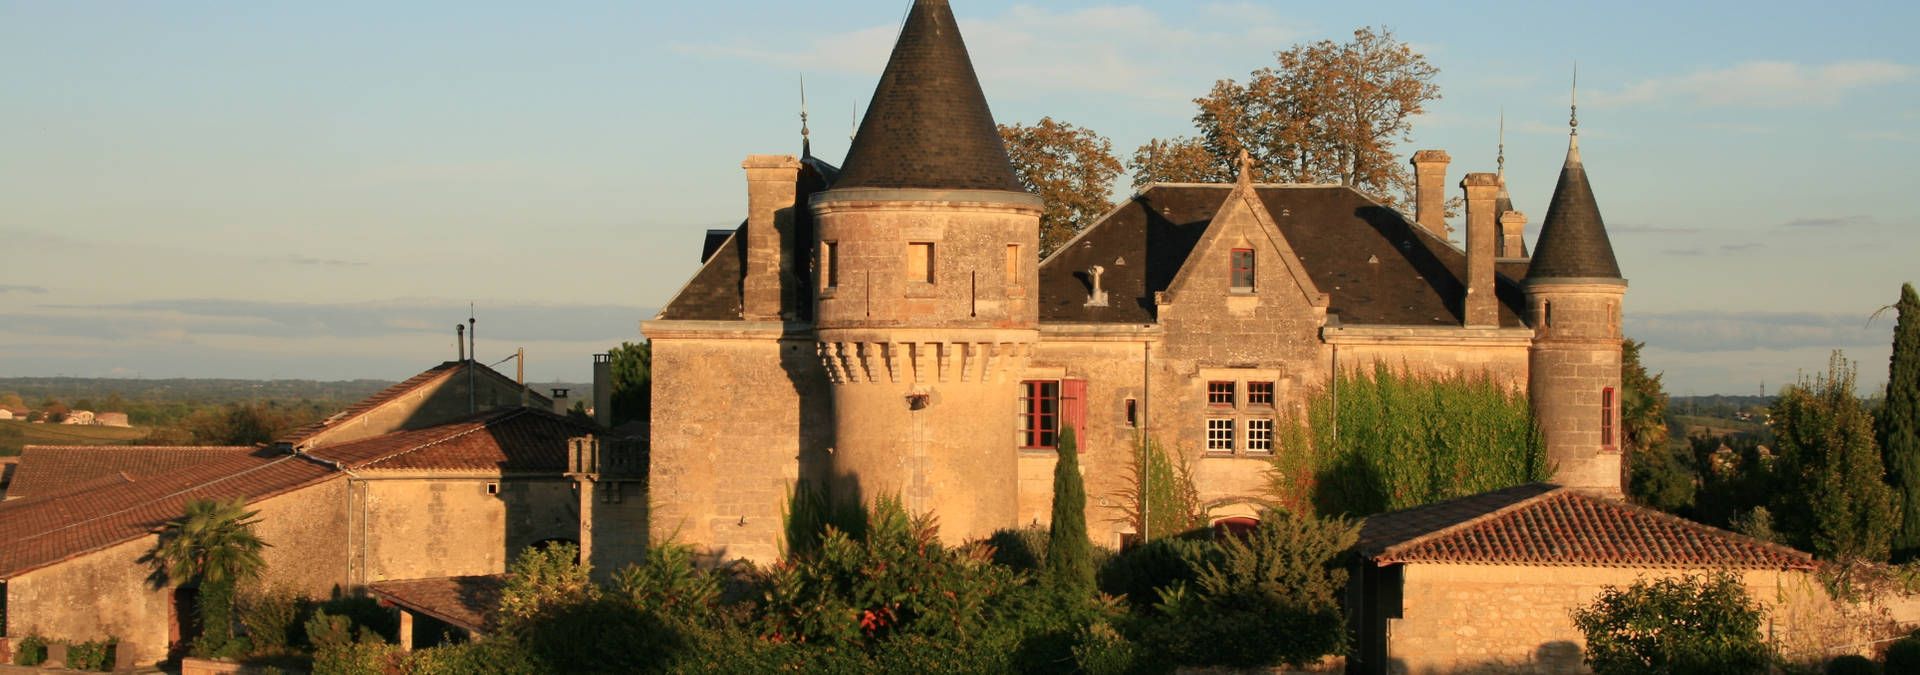 Château de la Grave - Rue des Vignerons 